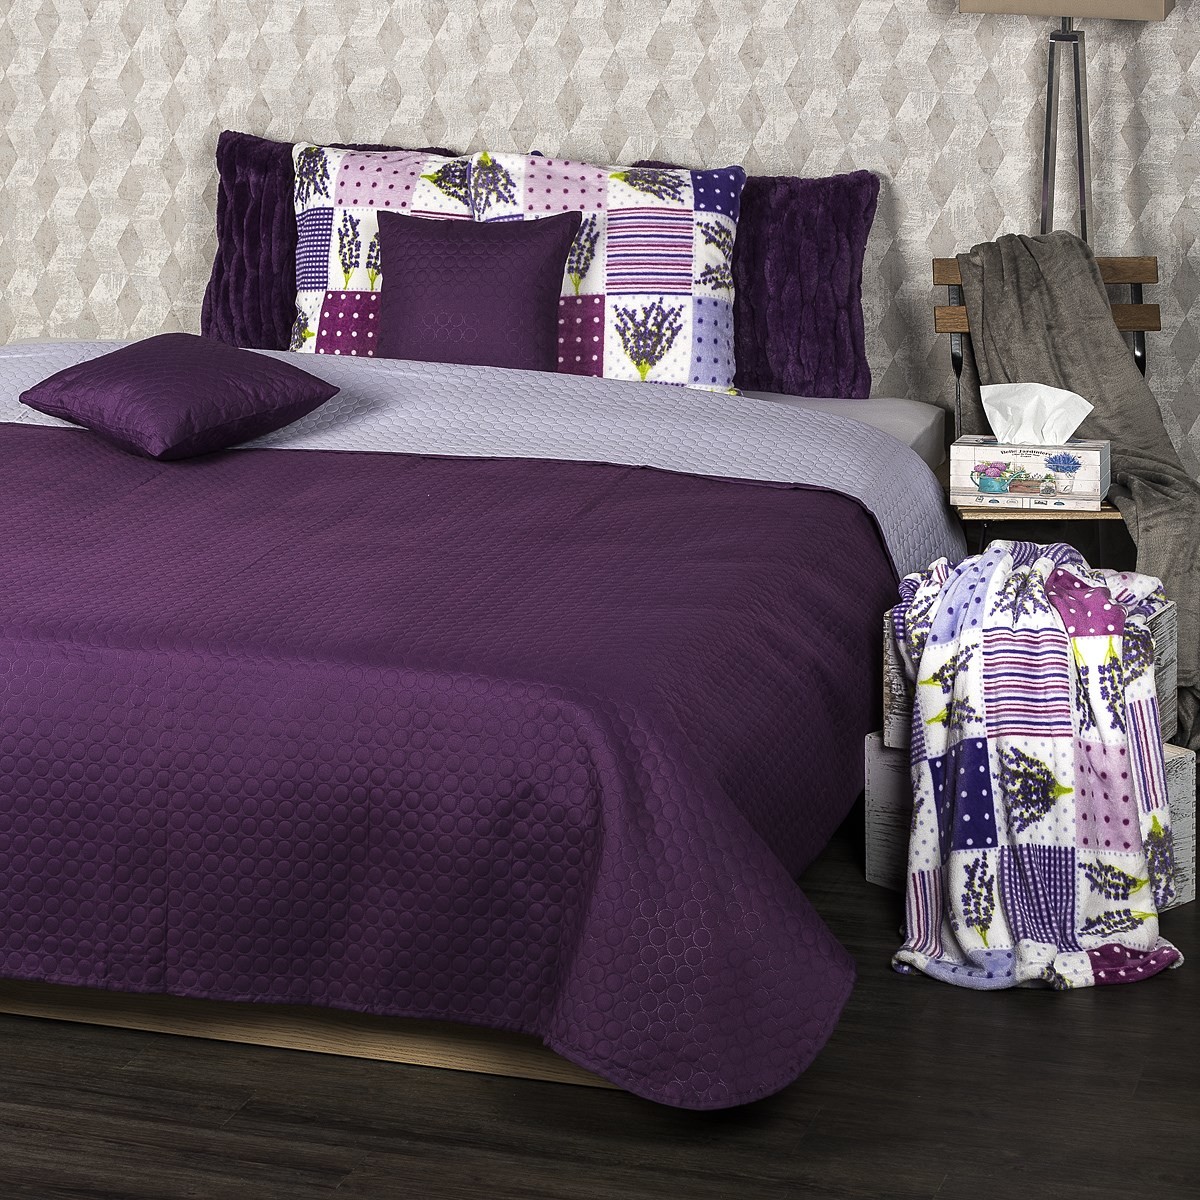 4Home 4Home Narzuta na łóżko Doubleface fioletowy/jasnofioletowy, 220 x 240 cm, 2x 40 x 40 cm